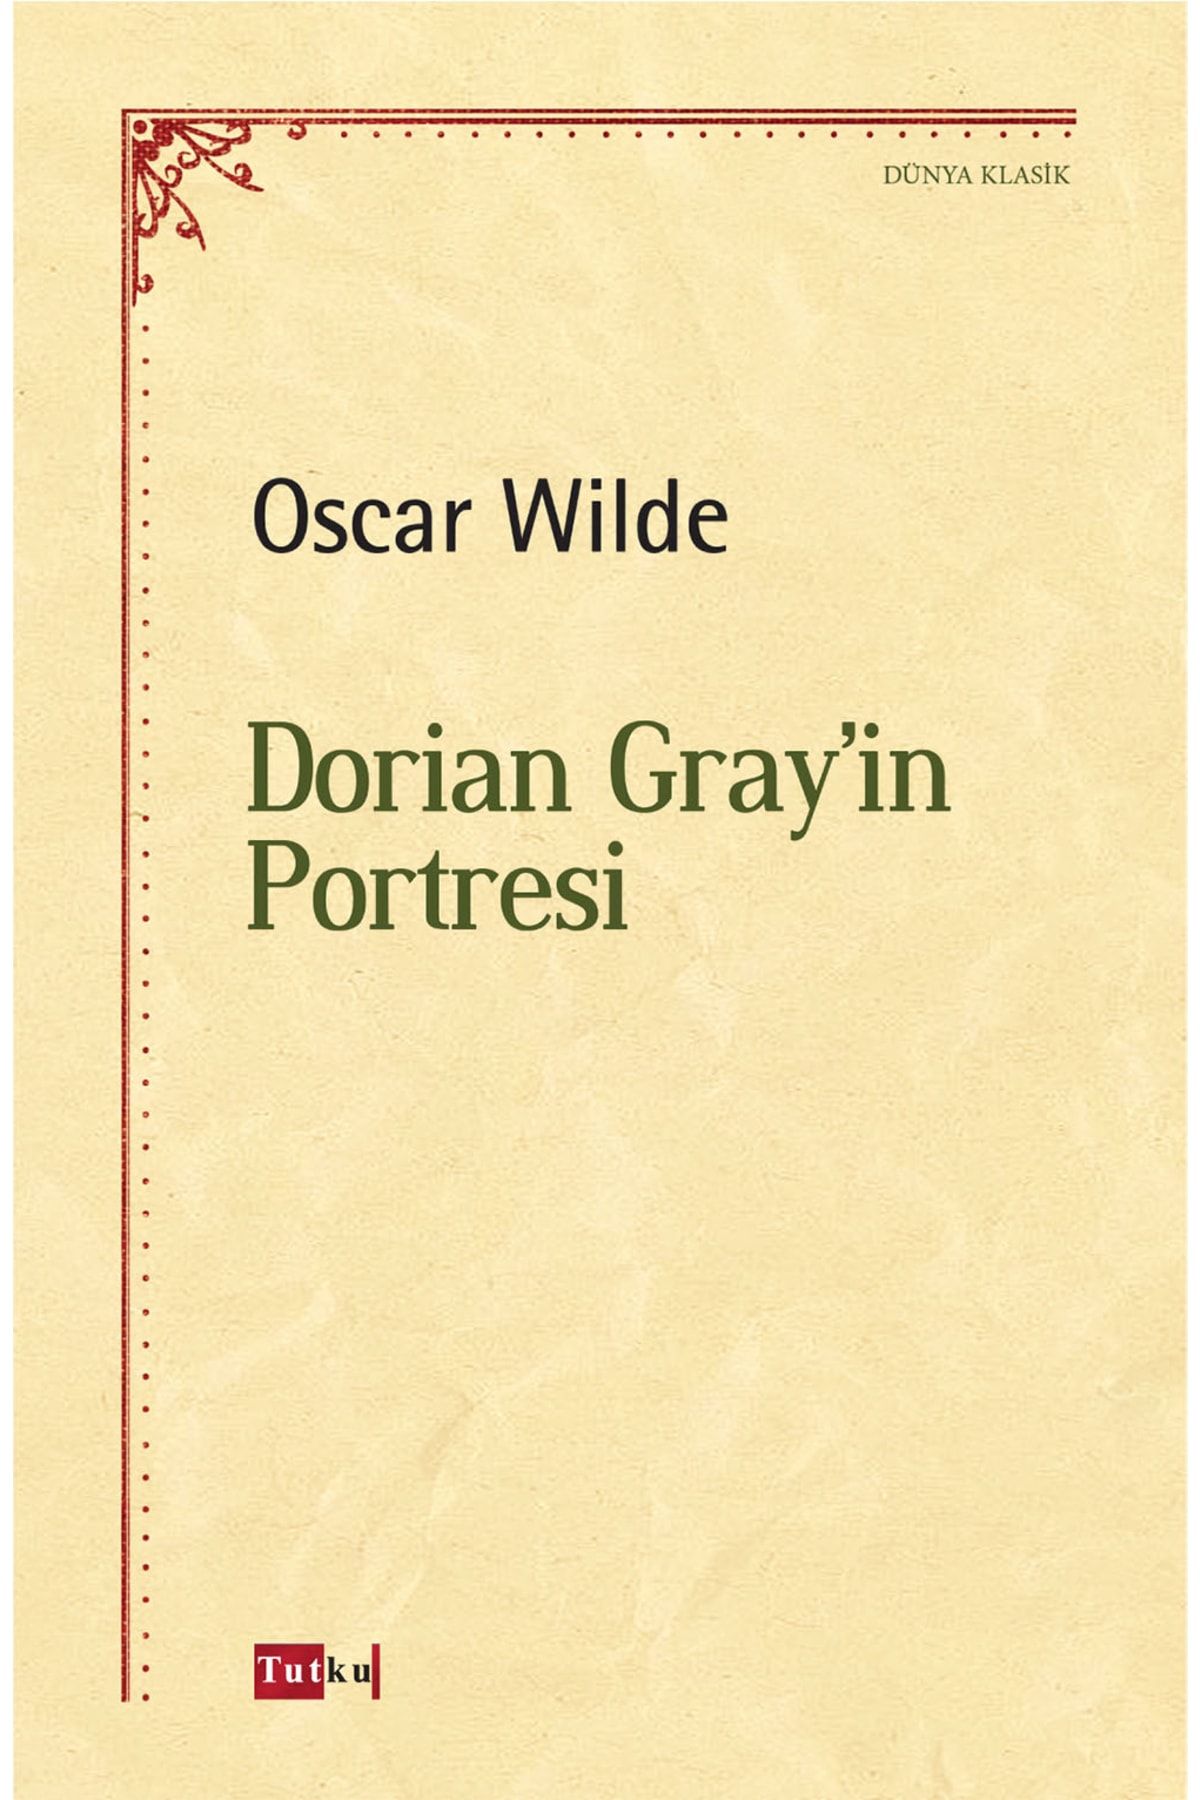 Tutku Yayınevi Dorian Gray'in Portresi - Oscar Wilde, Dünya Klasik, Hikaye, Roman